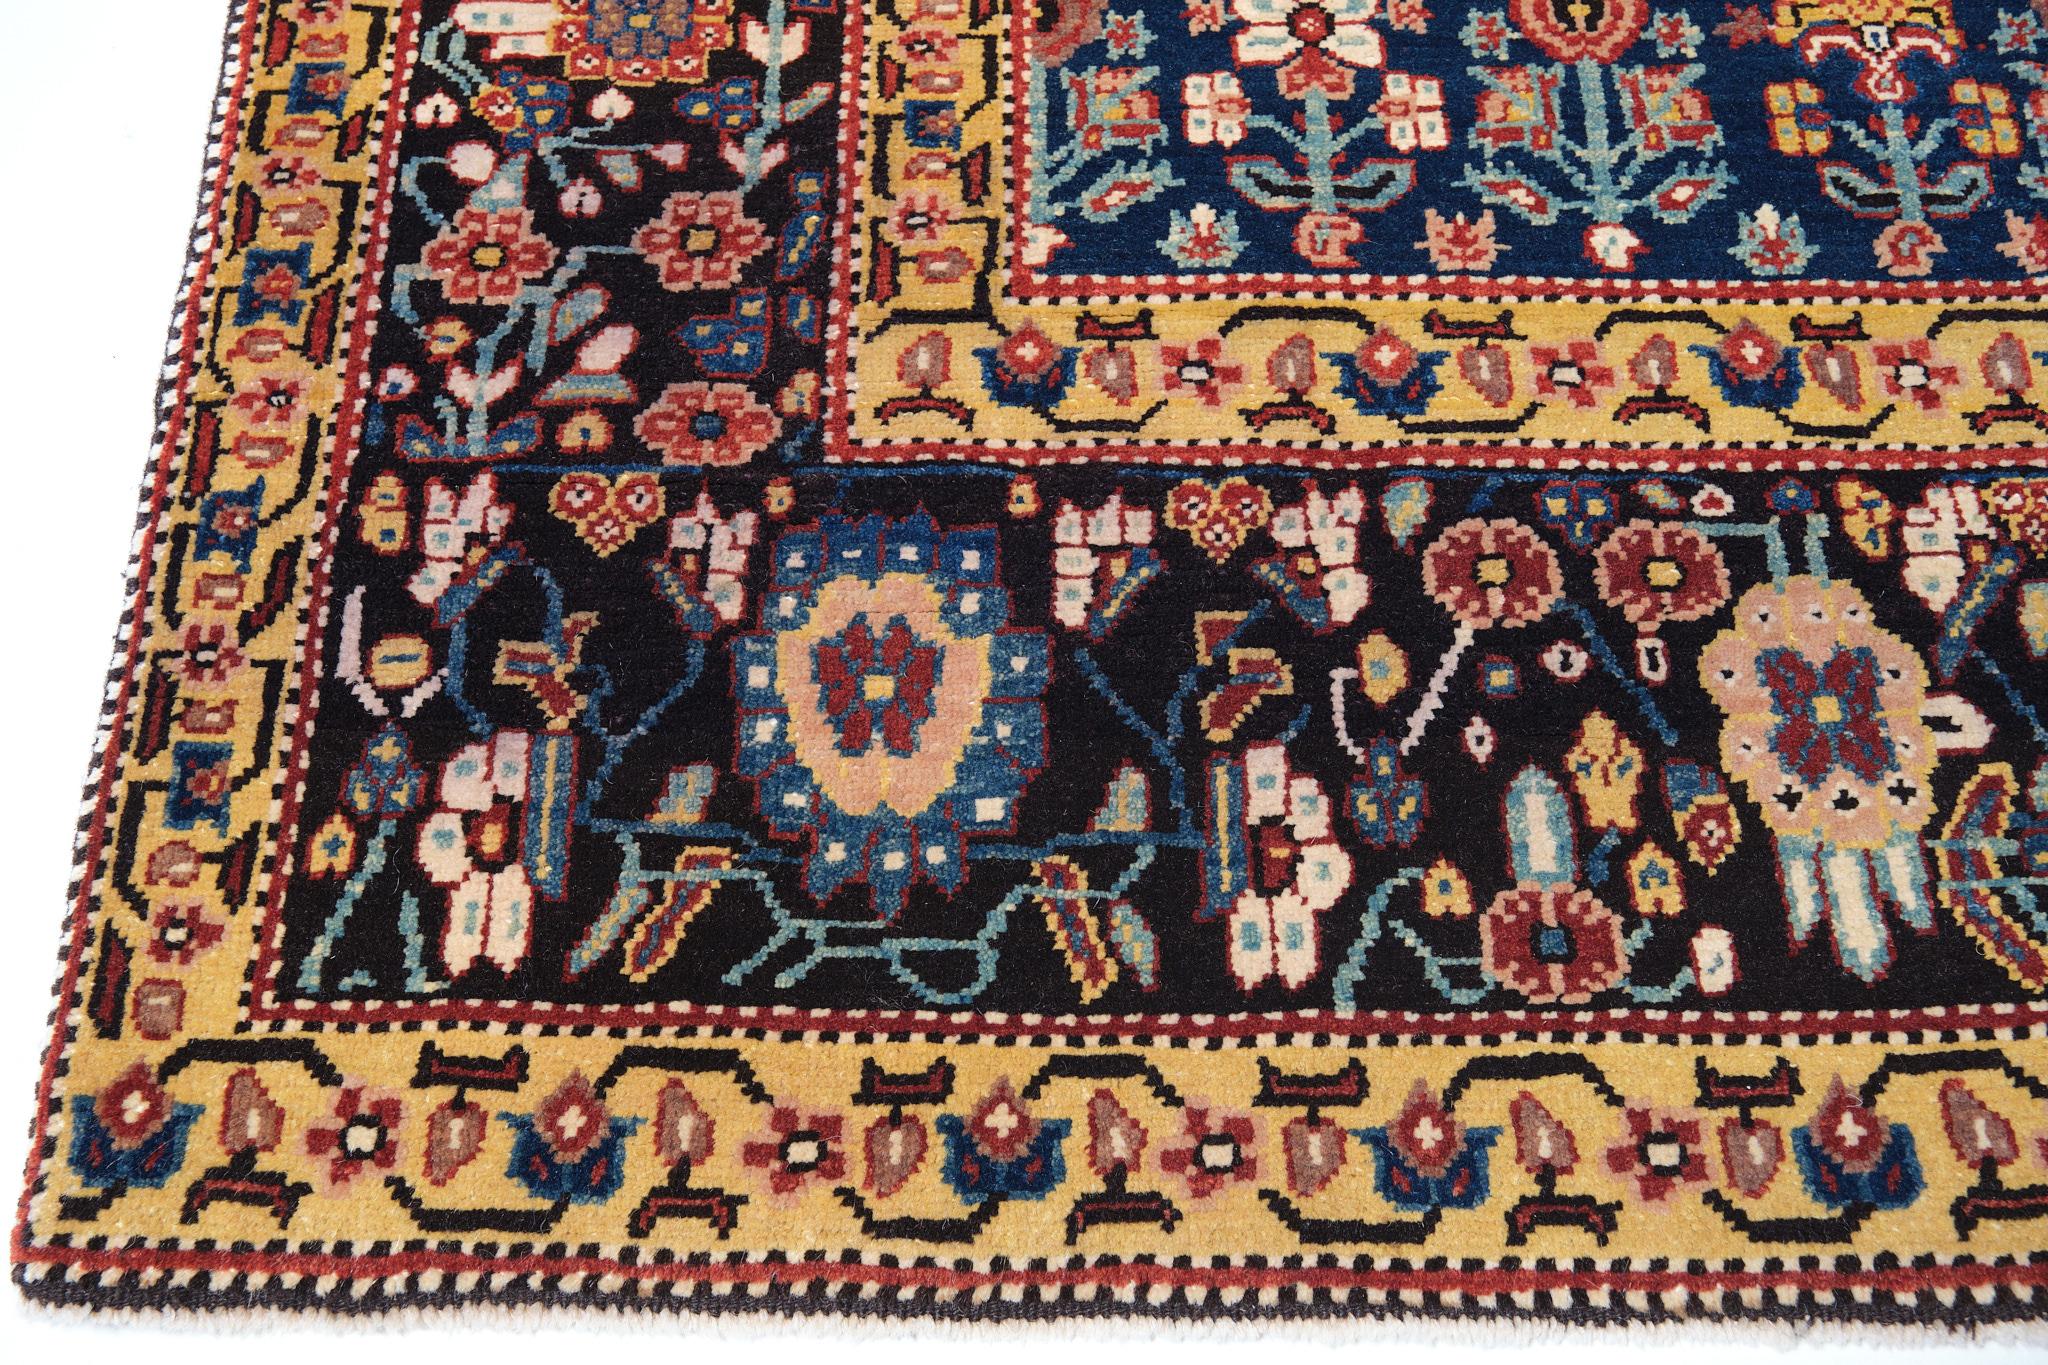 La source de ce tapis provient du livre Antique Rugs of Kurdistan A Historical Legacy of Woven Art, James D. Burns, 2002 nr.36. Il s'agit d'un exemple exclusif de tapis avec des rangées de fleurs ascendantes décalées, datant des années 1800 et